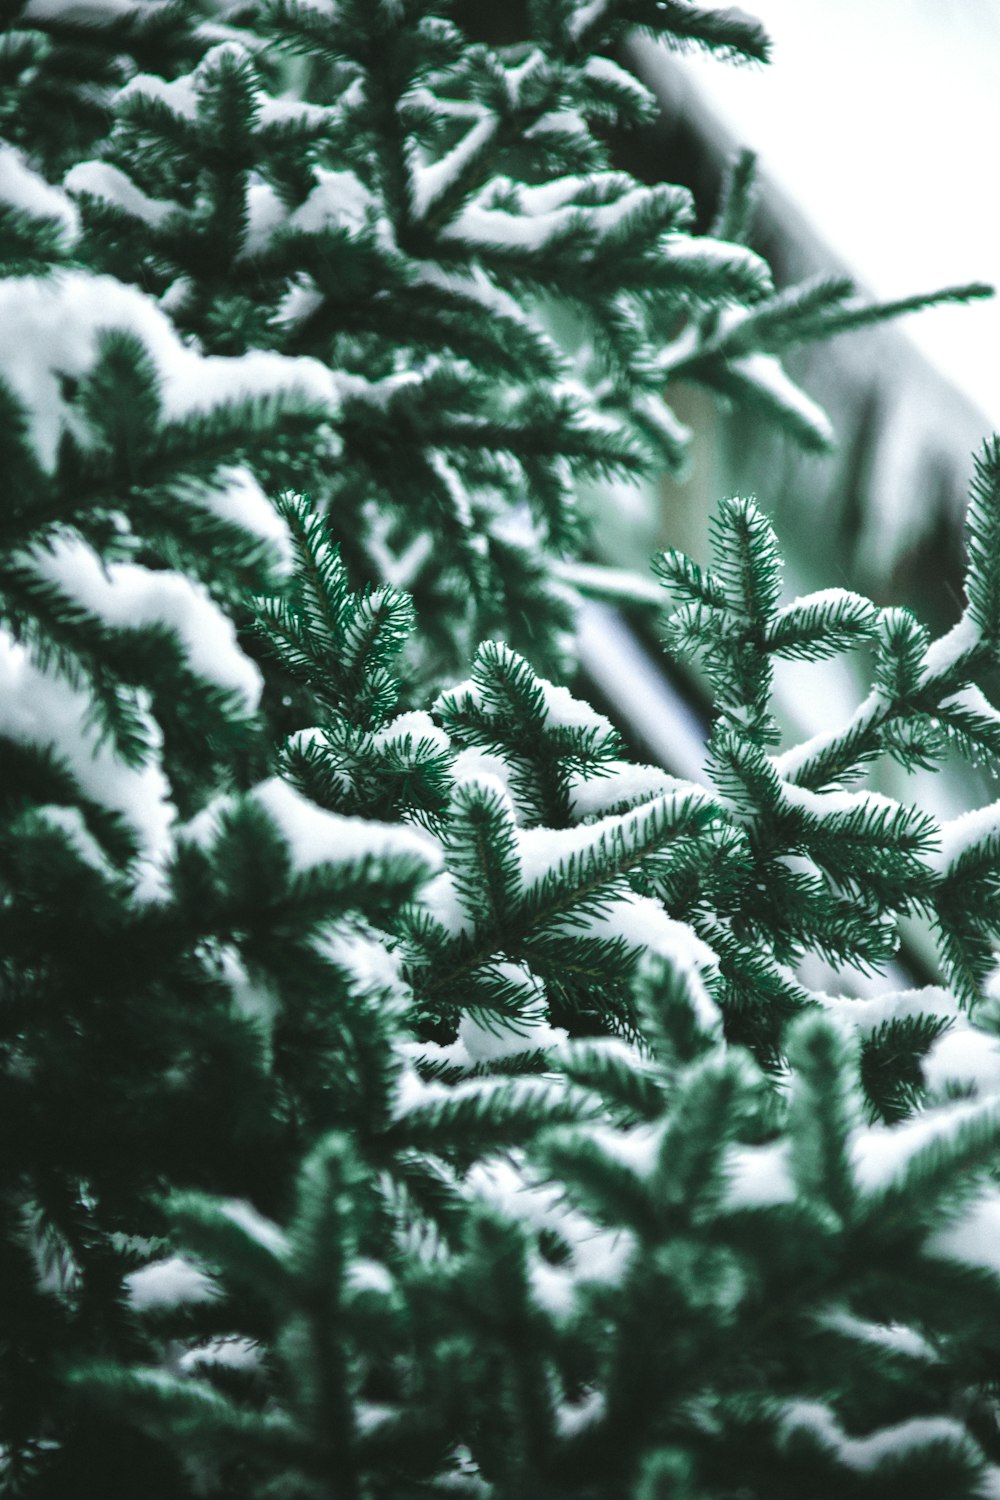 雪に覆われた緑の松の木のクローズアップ写真